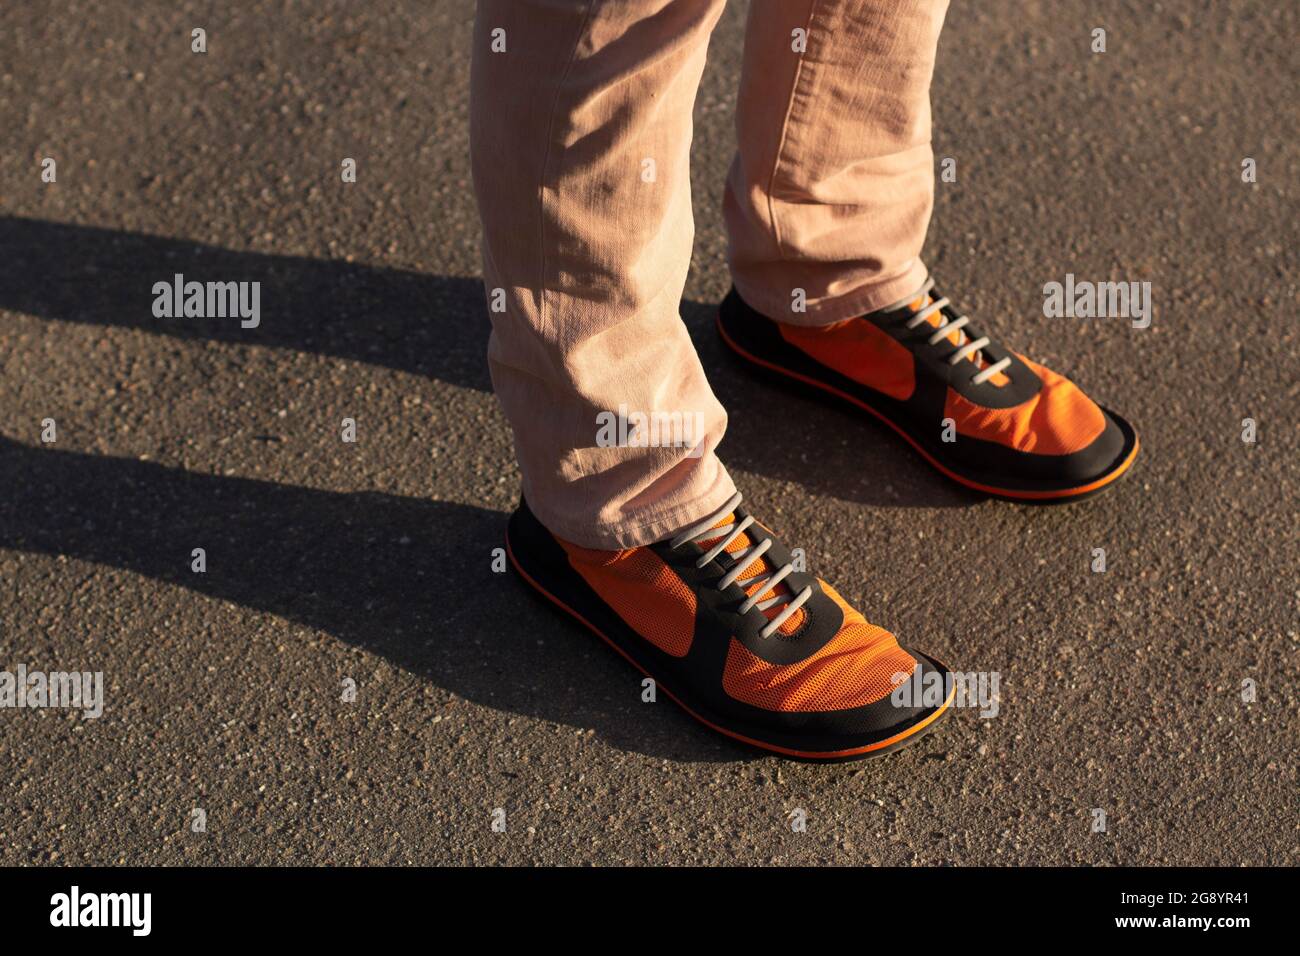 Des bottes orange sur leurs pieds. Chaussures tendance au soleil. Un homme en baskets dans la rue. Des vêtements brillants pour les pieds. Un homme avec une grande taille de jambe Banque D'Images